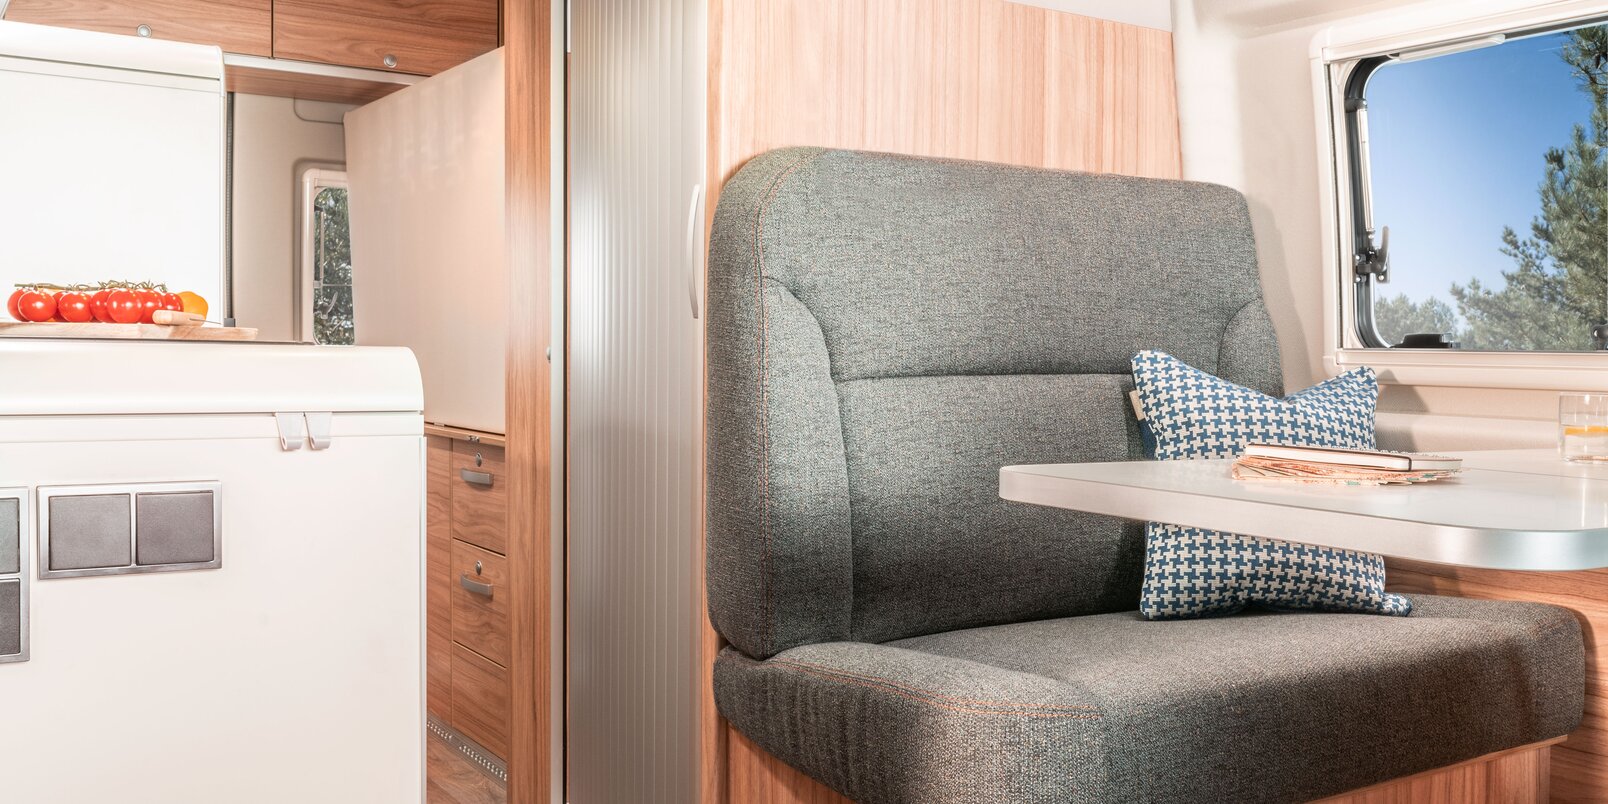 Tisch, Wohnraum-Sitzbank mit Dekokissen, Fenster, Dachstauschränke und Kühlschrank im HYMER Camper Van Fiat